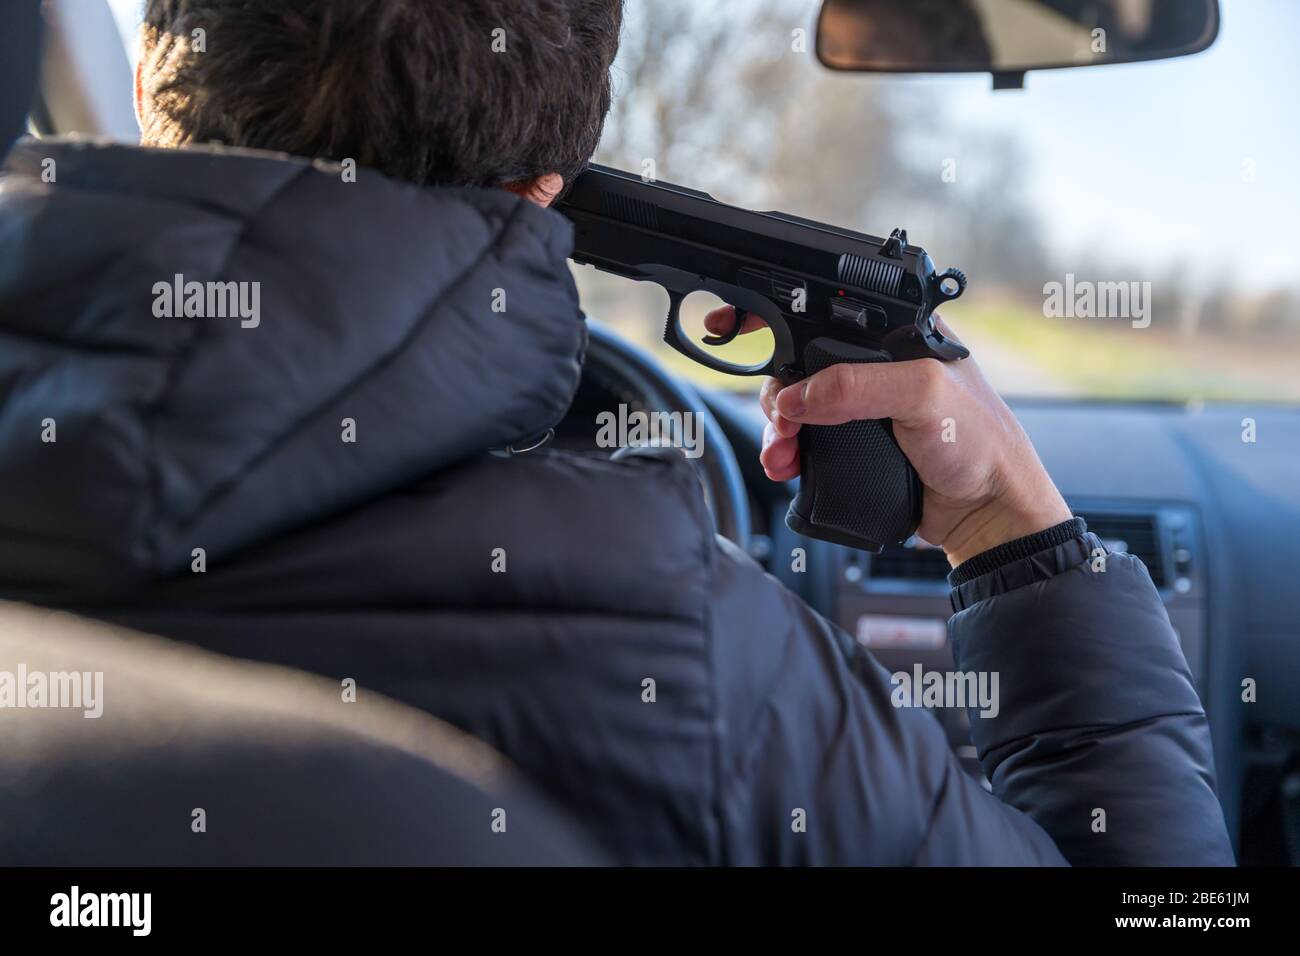 Ein Mann, der mit einer Waffe auf seinen eigenen Kopf zielt, um russisches Roulette zu spielen oder sich selbst zu töten Stockfoto